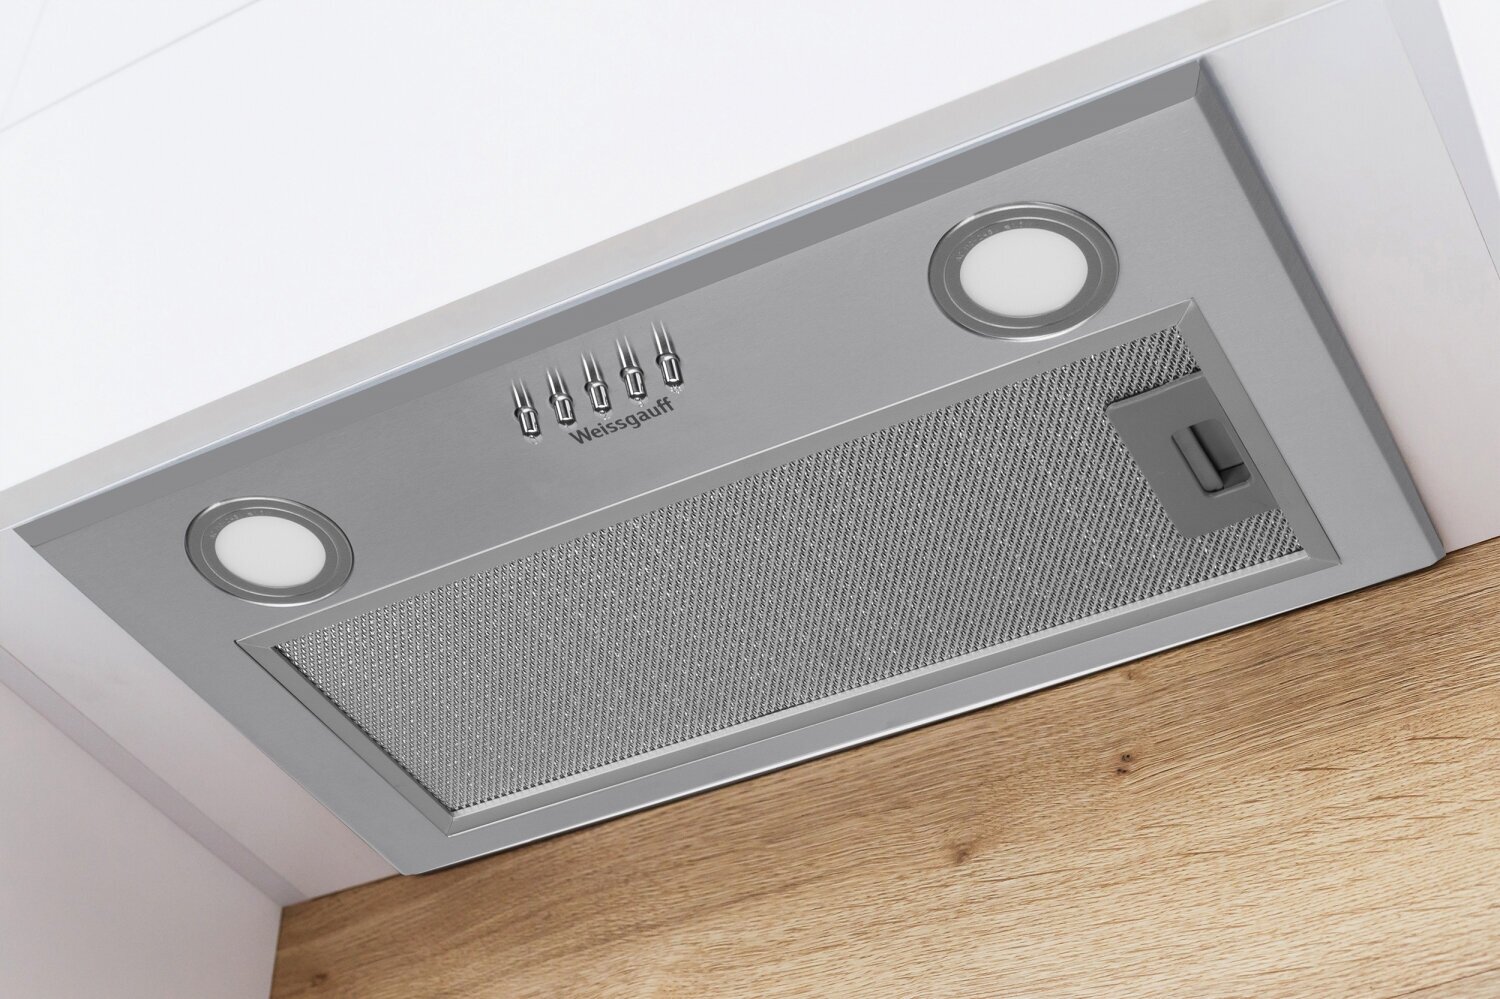 Кухонная встраиваемая вытяжка Weissgauff BOX 850 IX 3 года гарантии, Алюминиевый жировой фильтр, Низкий уровень шума